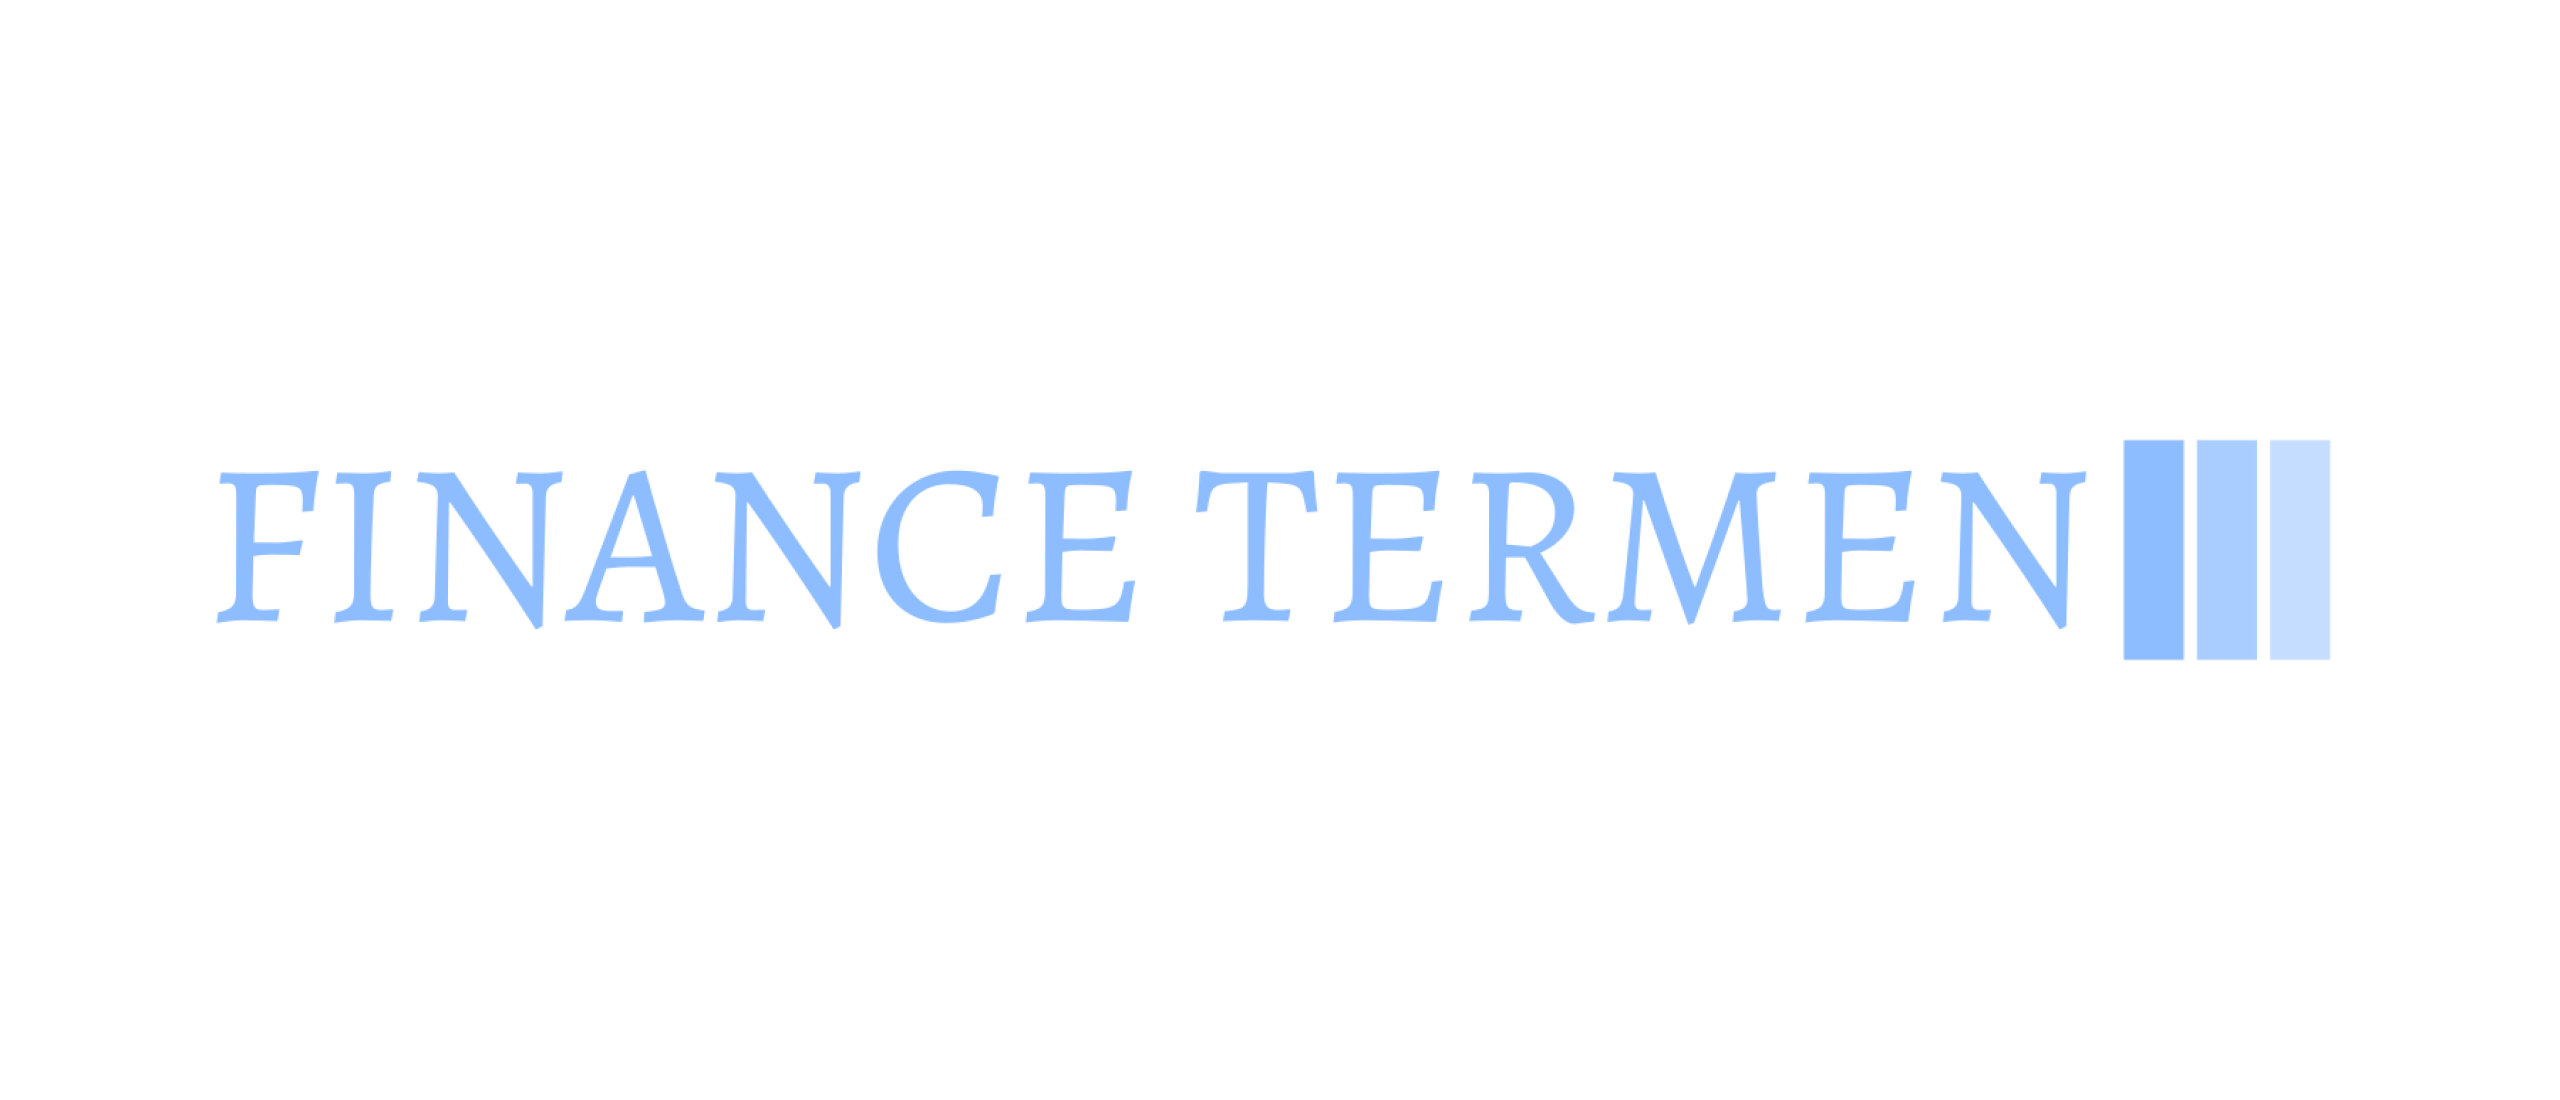 Finance termen logo